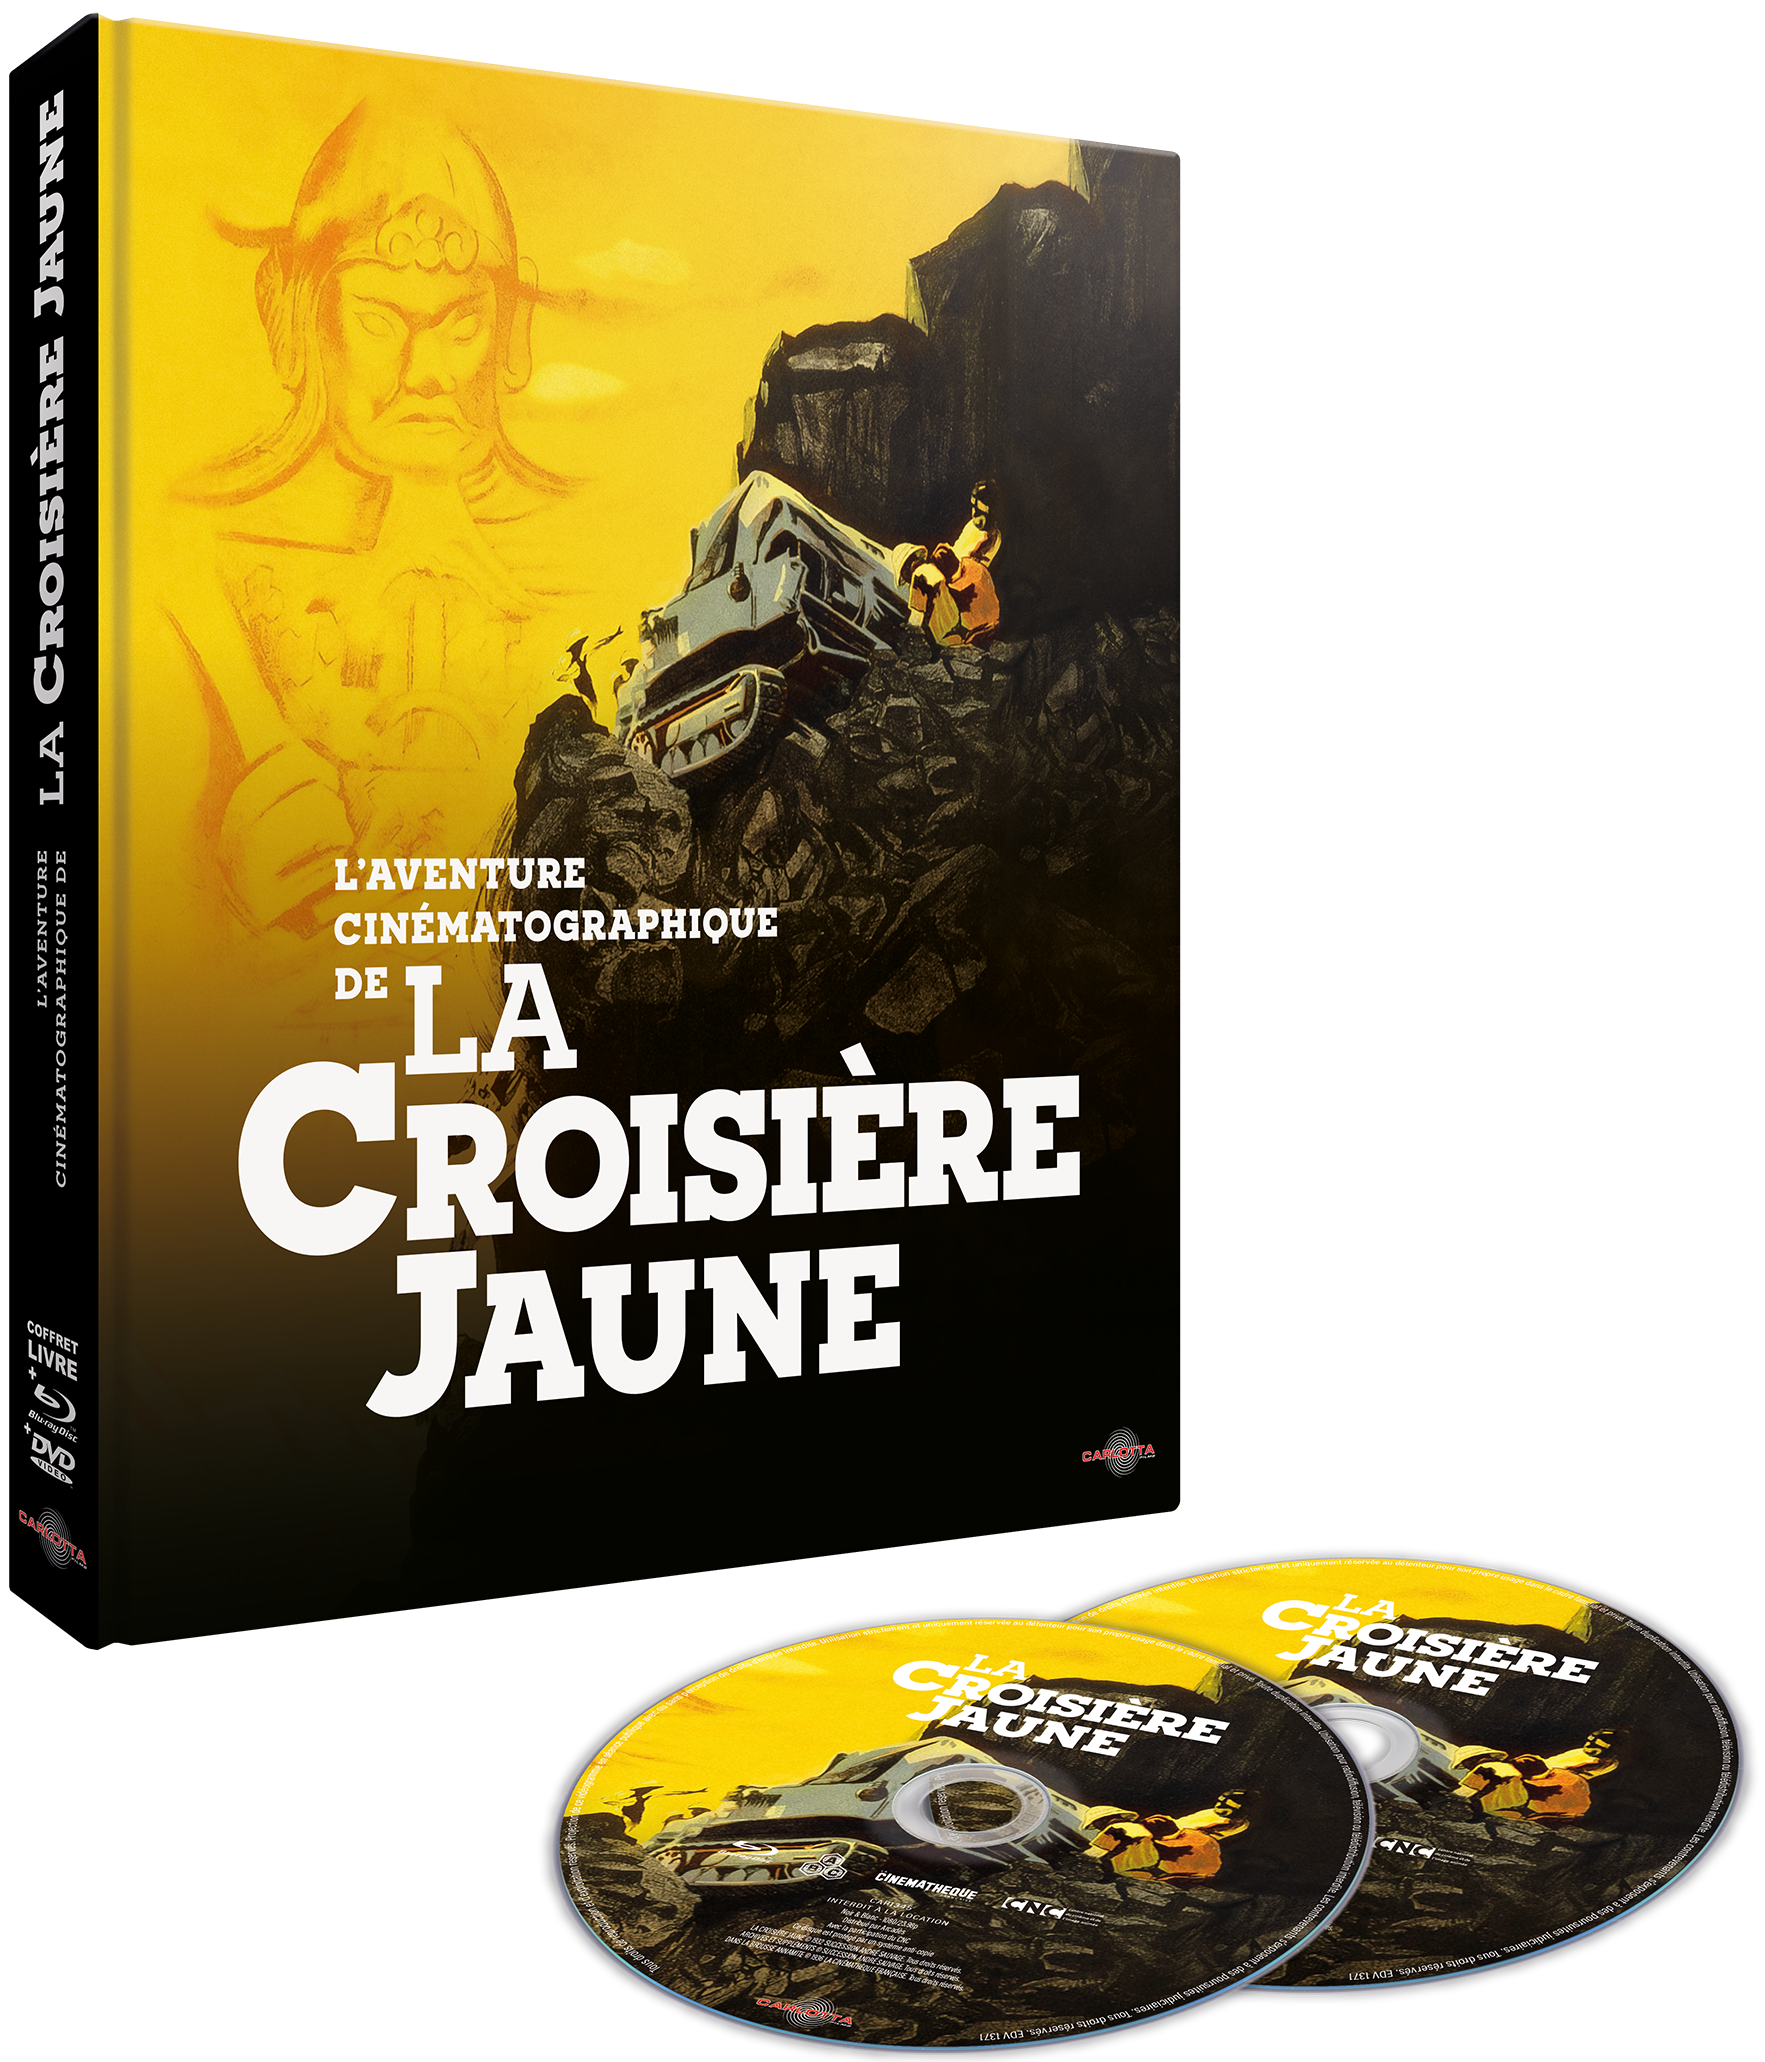 L'Aventure cinématographique de La Croisière jaune Blu-ray + DVD + Livre